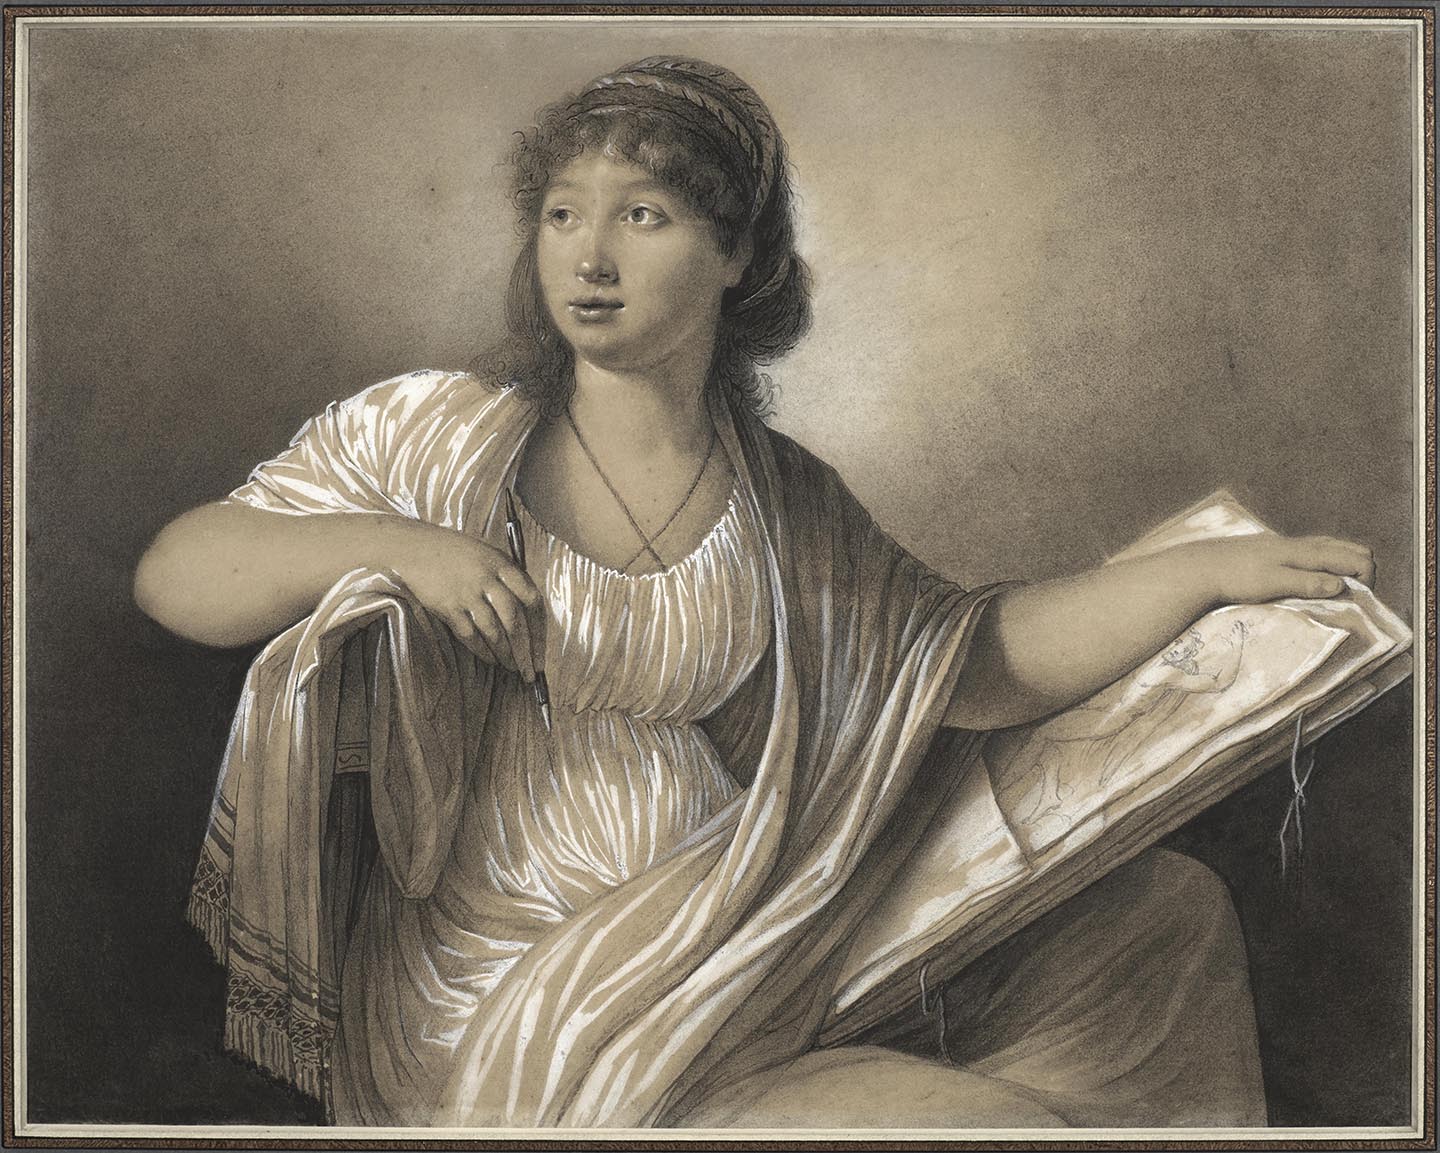 Chân dung, có thể là chân dung tự họa, 1793, họa sỹ Anne Guéret. Bộ sưu tập Katrin Bellinger. (Ảnh: Đăng dưới sự cho phép của Bảo tàng Nghệ thuật Baltimore)